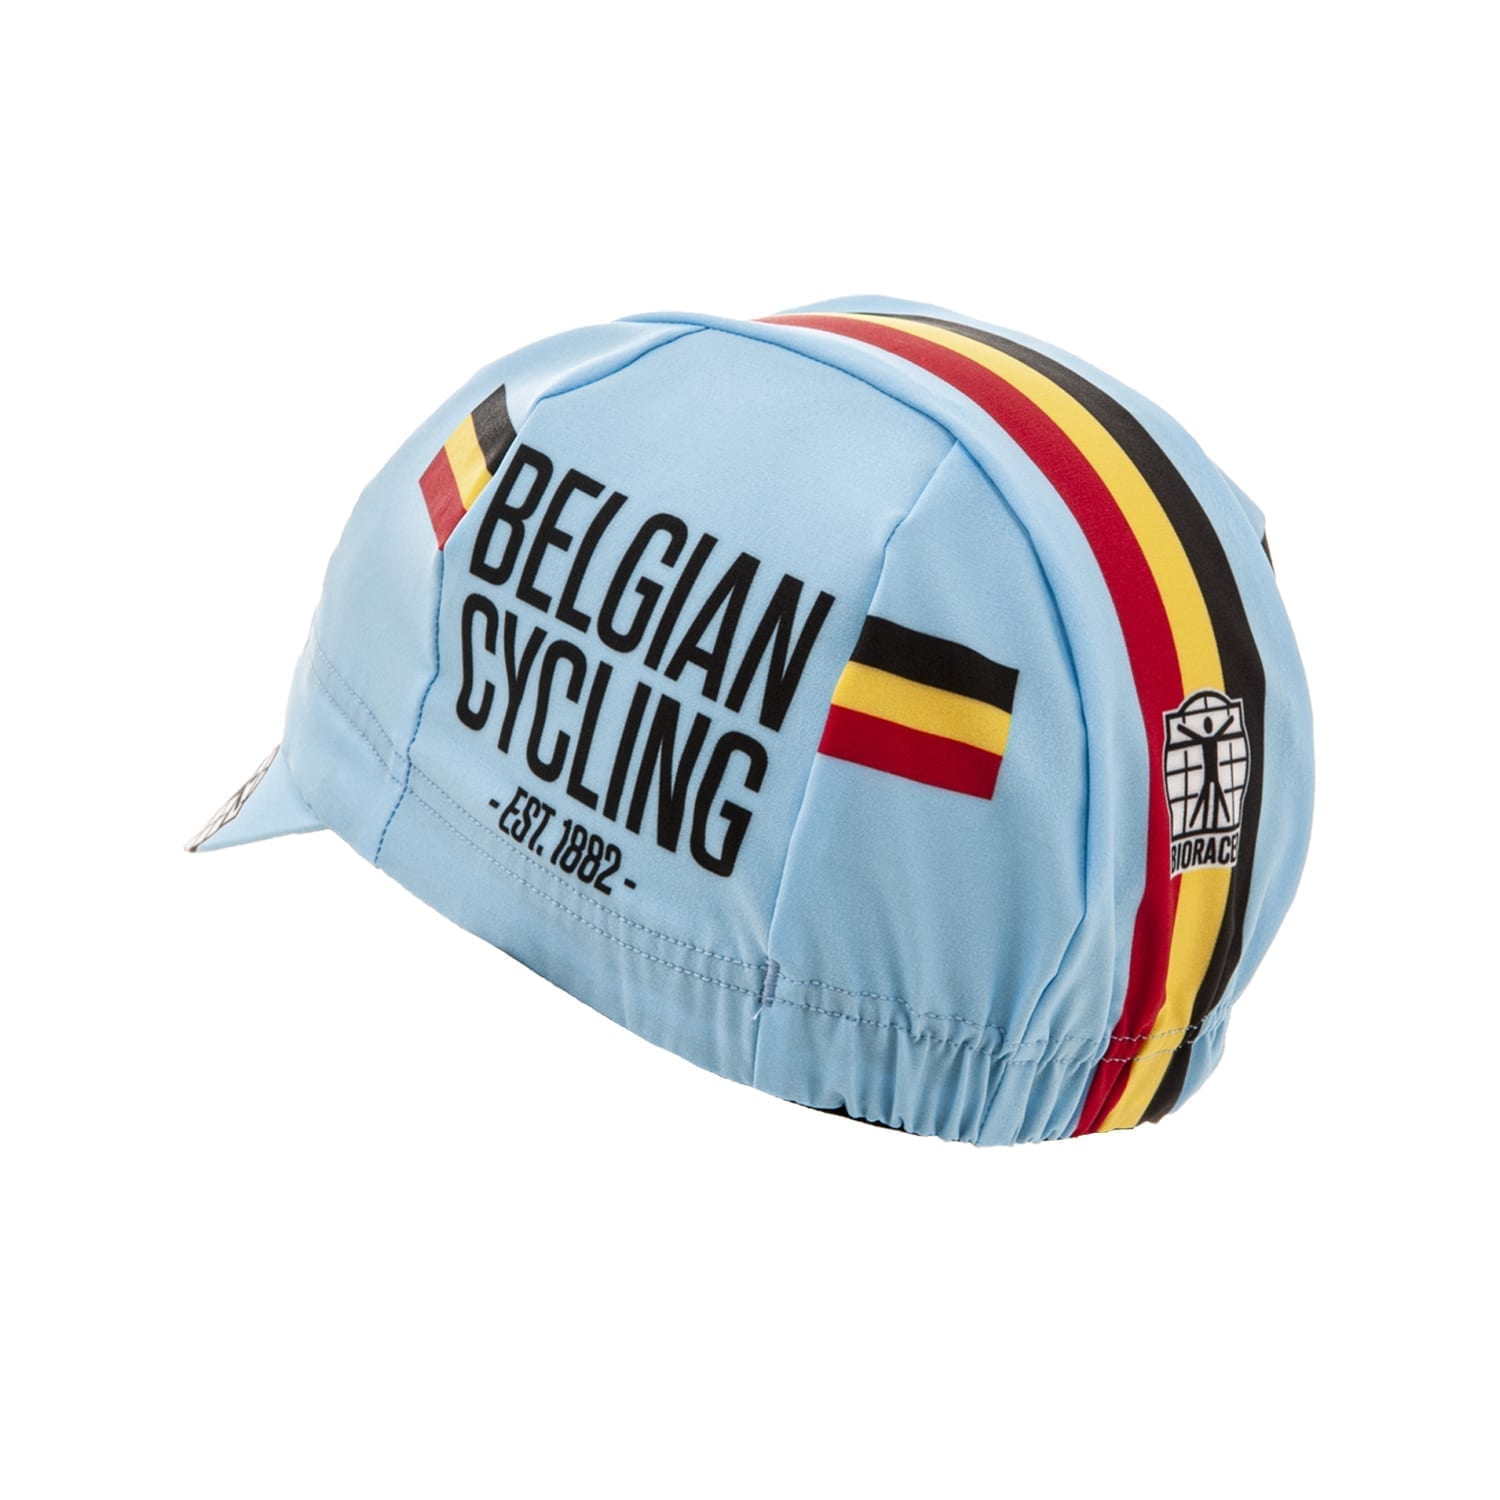 Official Team Belgium Cap